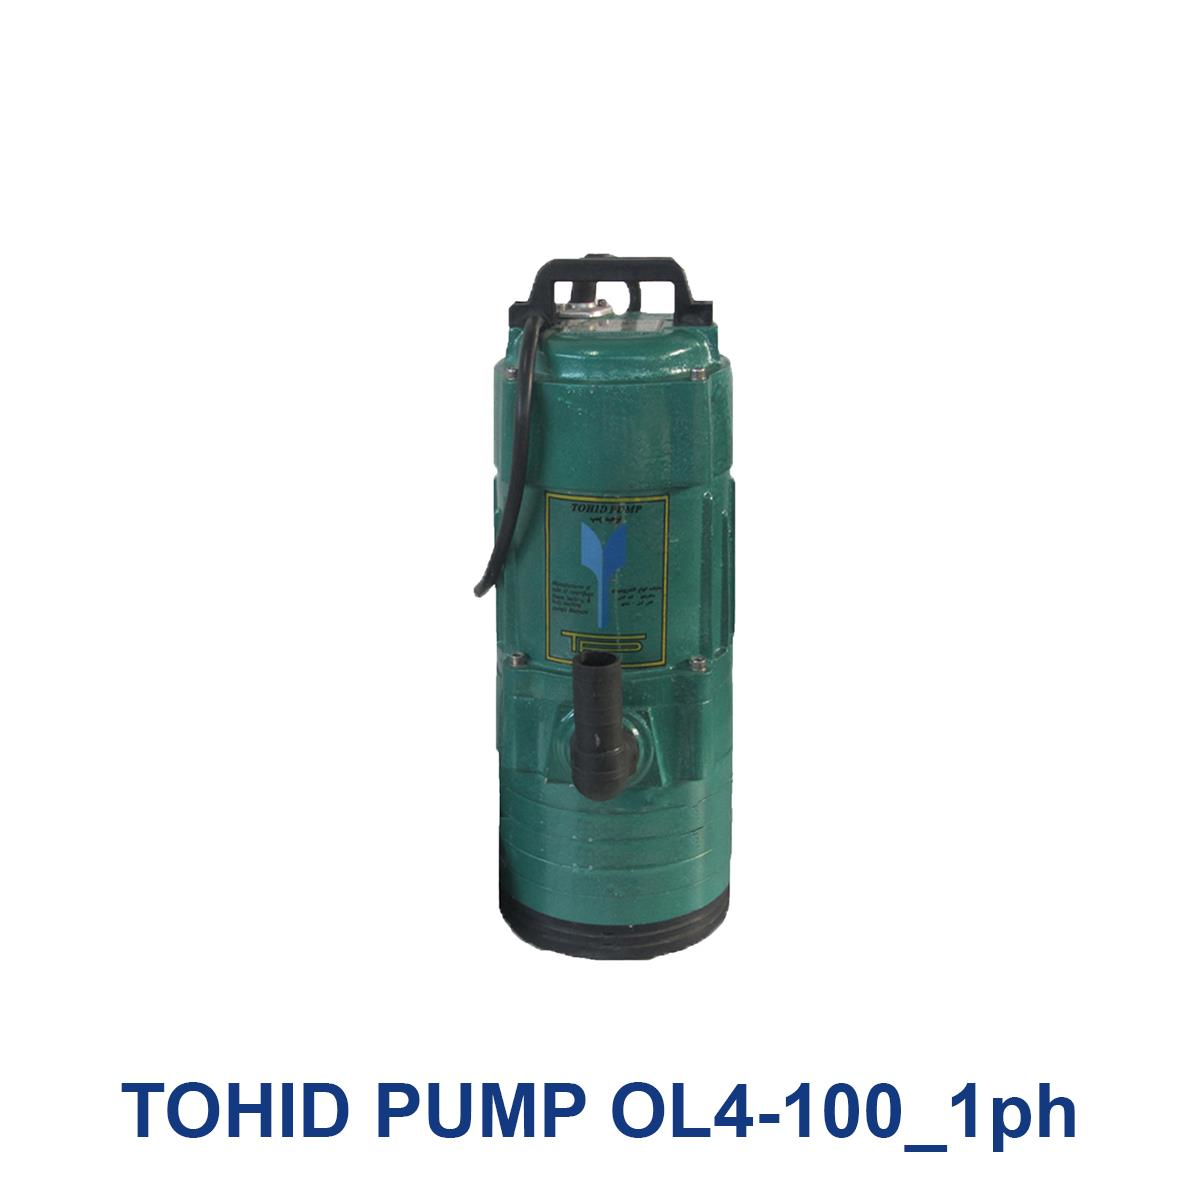 TOHID-PUMP-OL4-100_1ph